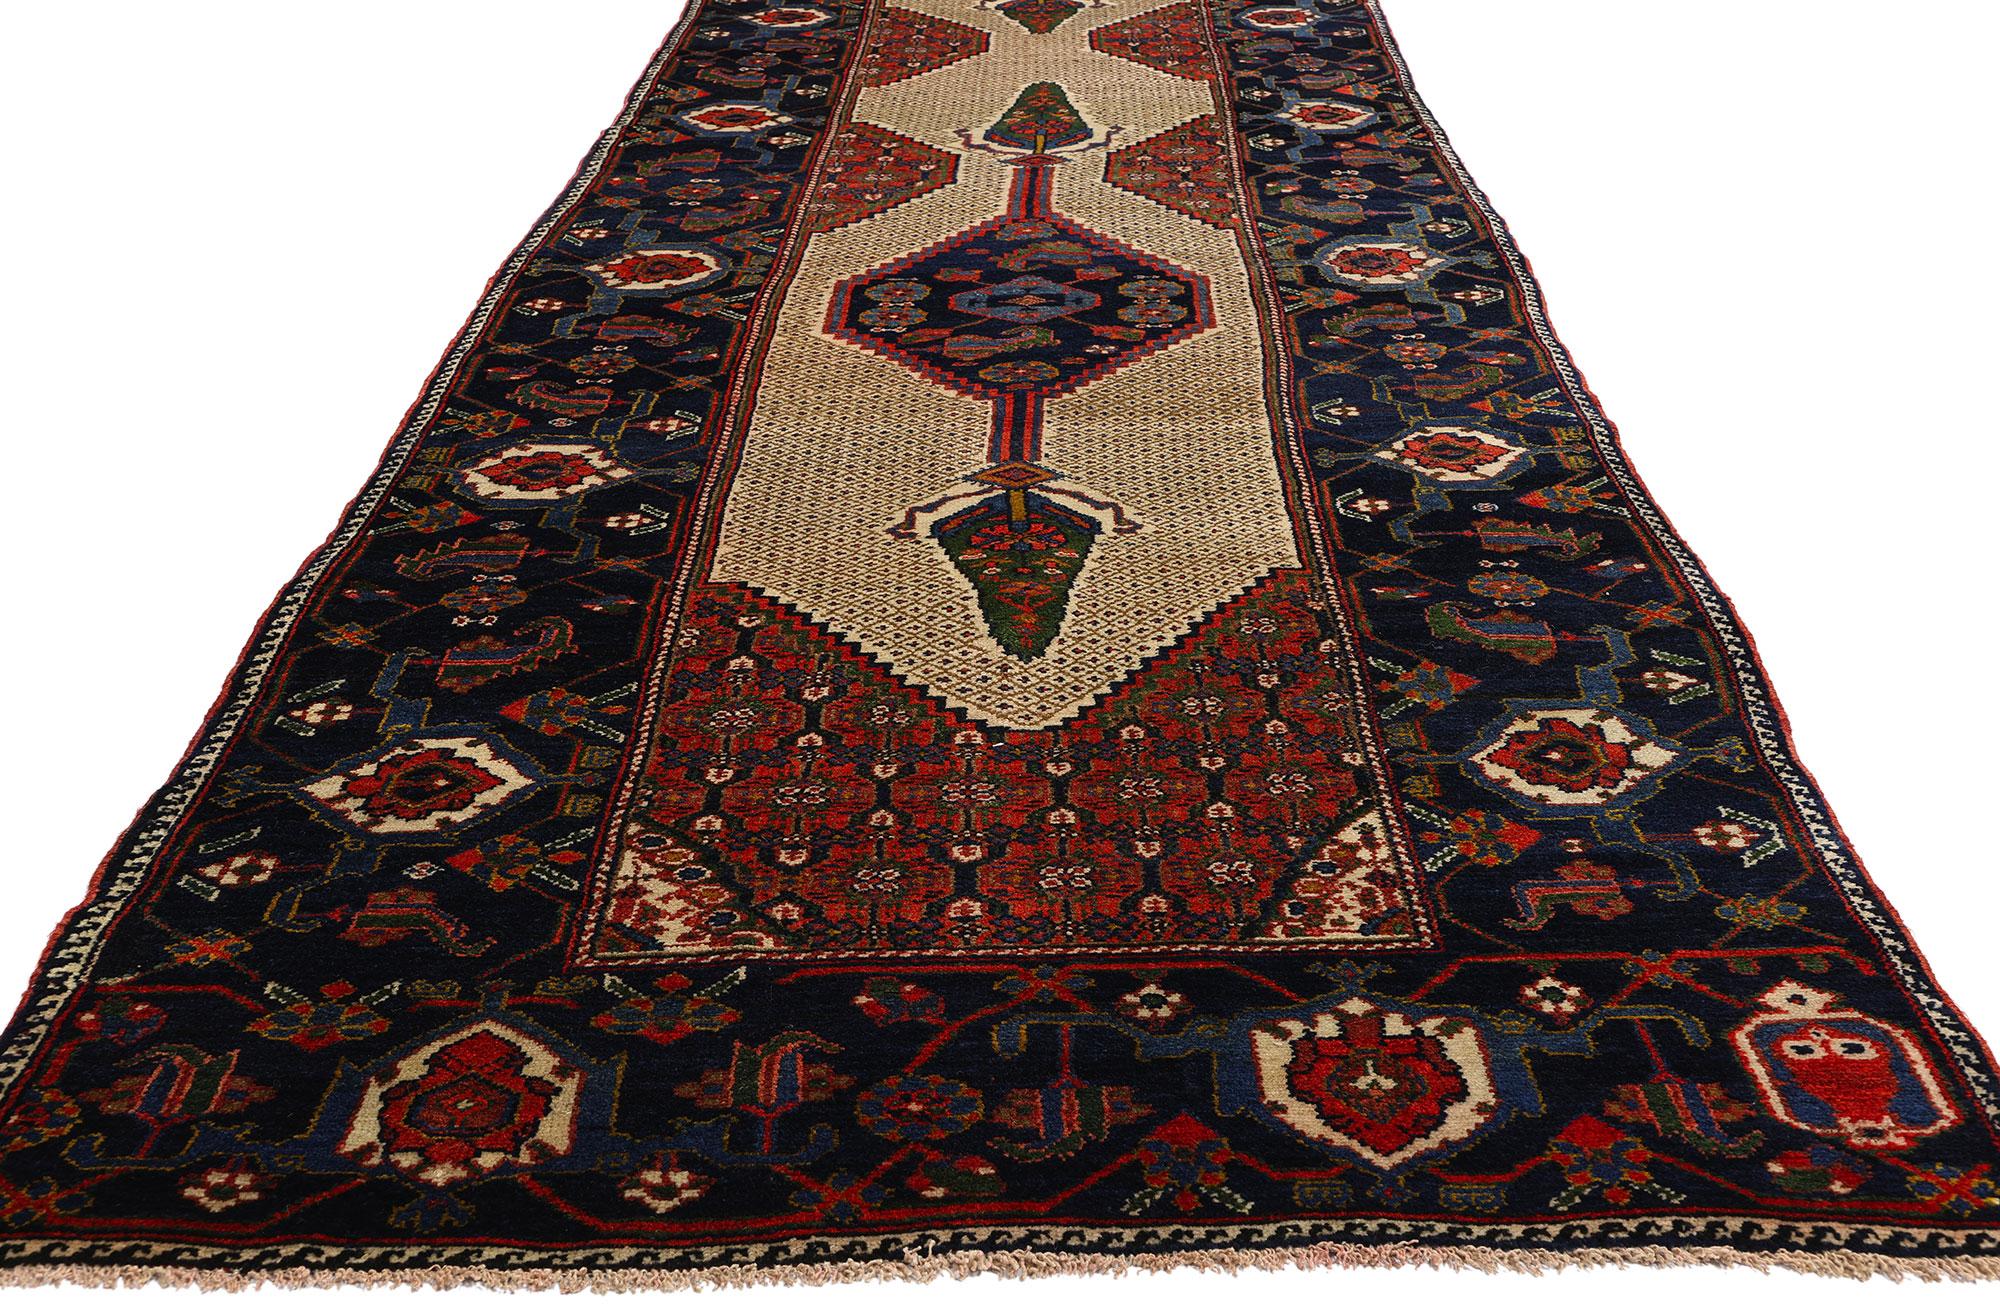 53877 Extra-Long Tapis Vintage By Malayer Runner, 03'02 x 21'00. Les chemins de table des tapis persans anciens de Malayer sont de longs et étroits tapis de laine noués à la main, originaires de Malayer, en Iran. Ils sont appréciés pour leur